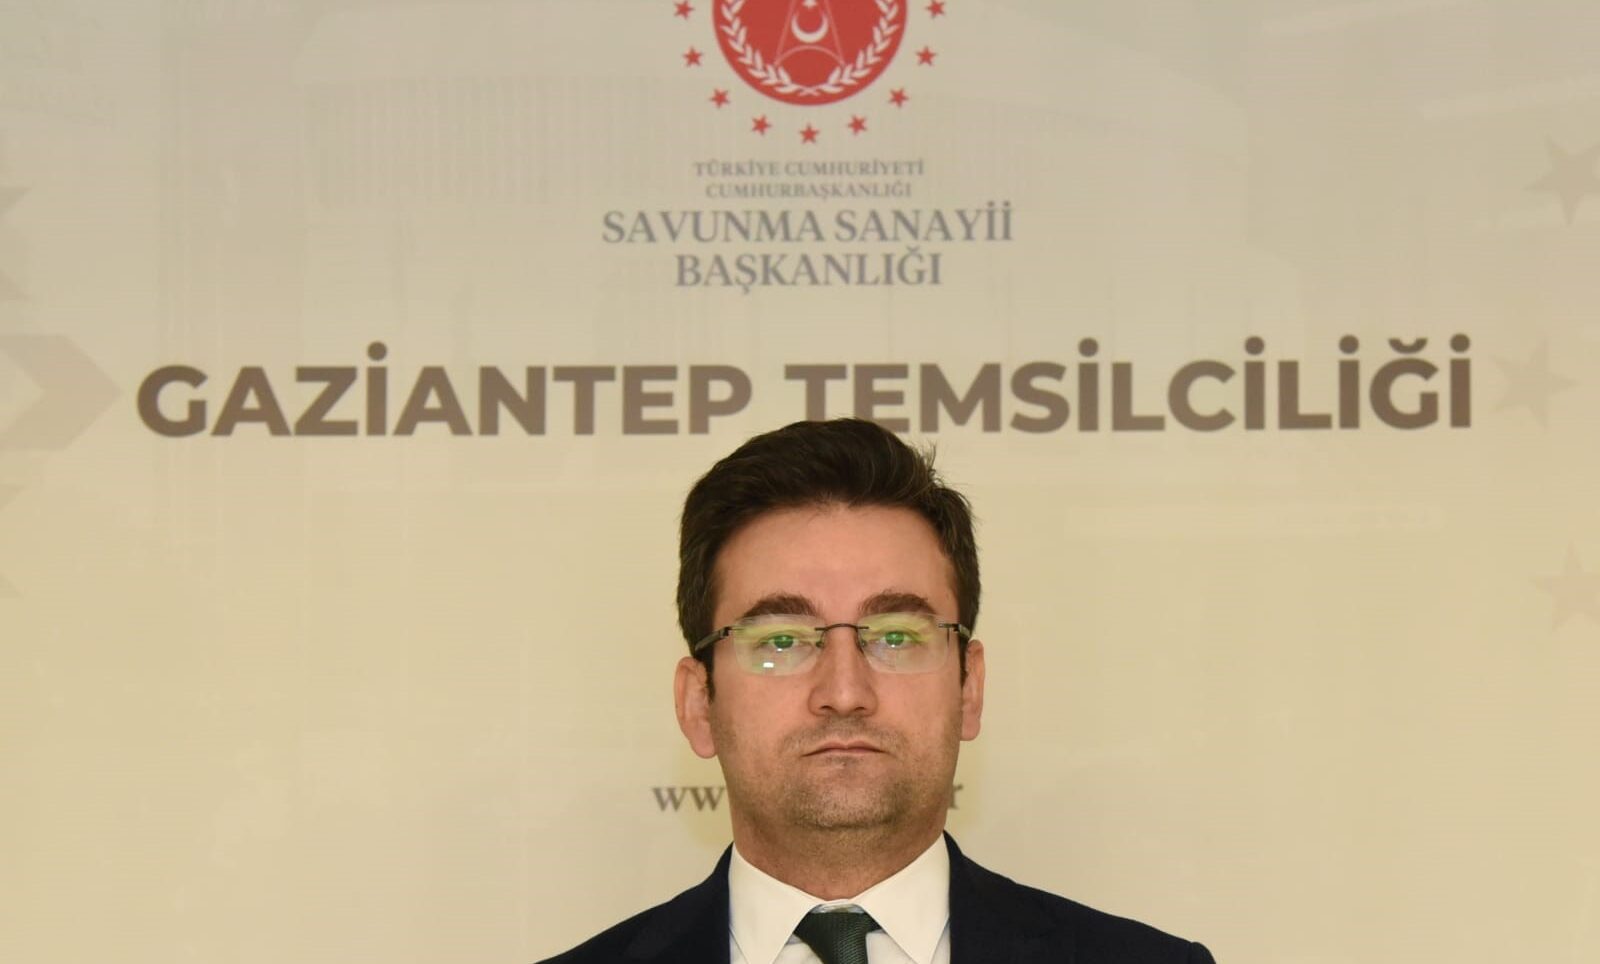 Savunma Sanayii Başkanlığı Gaziantep Temsilciliği’ne Ulutürk görevlendirildi